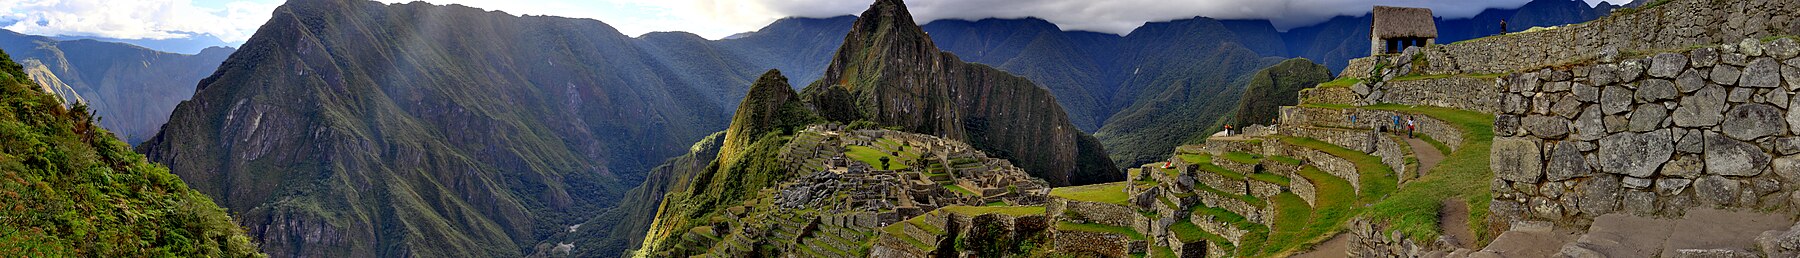 Peru banner 2.jpg